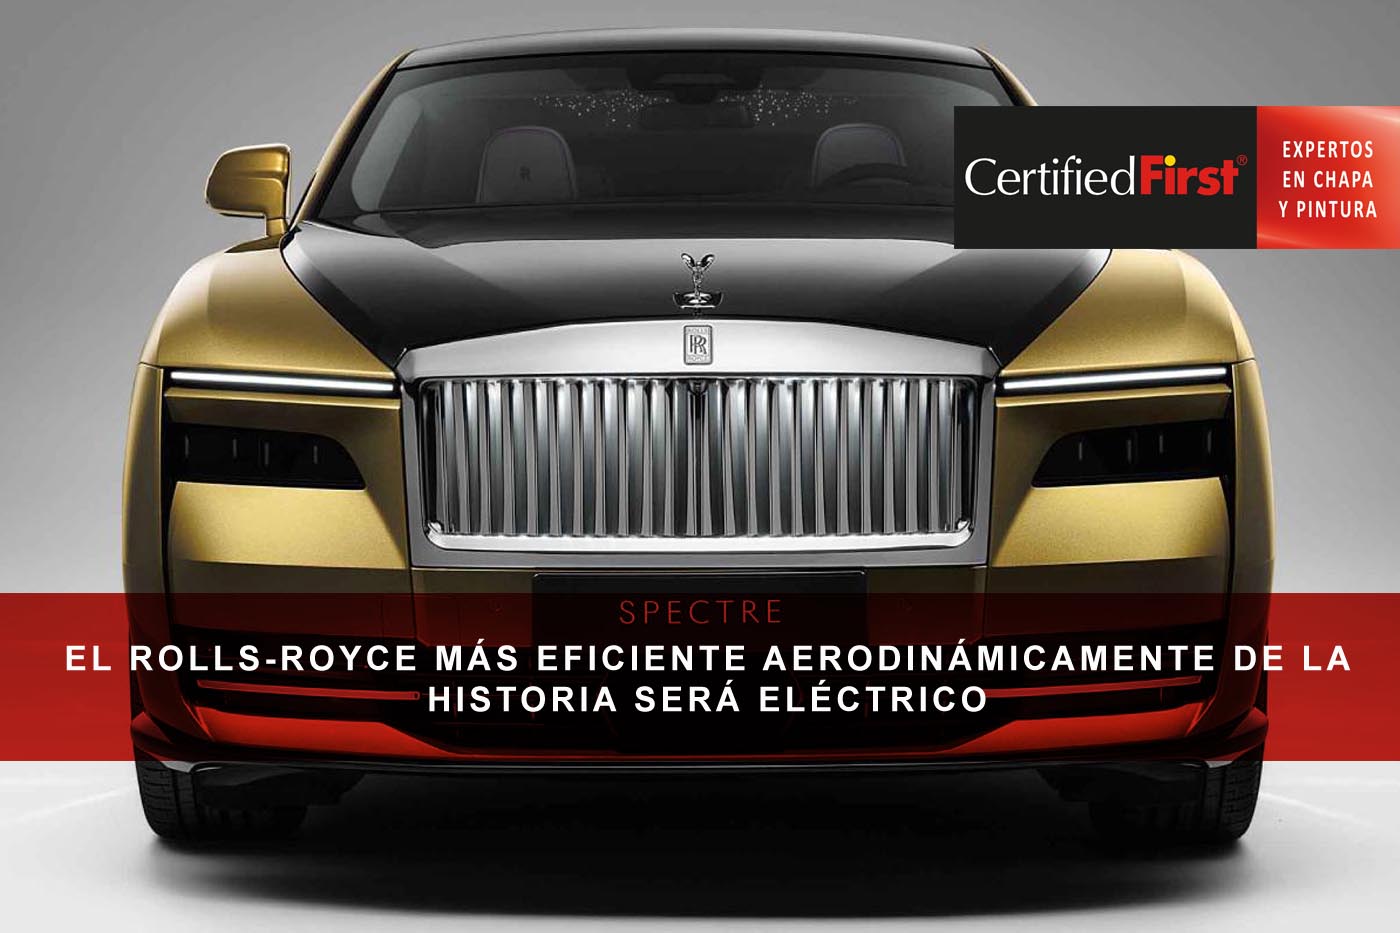 El Rolls-Royce más eficiente aerodinámicamente de la historia será eléctrico